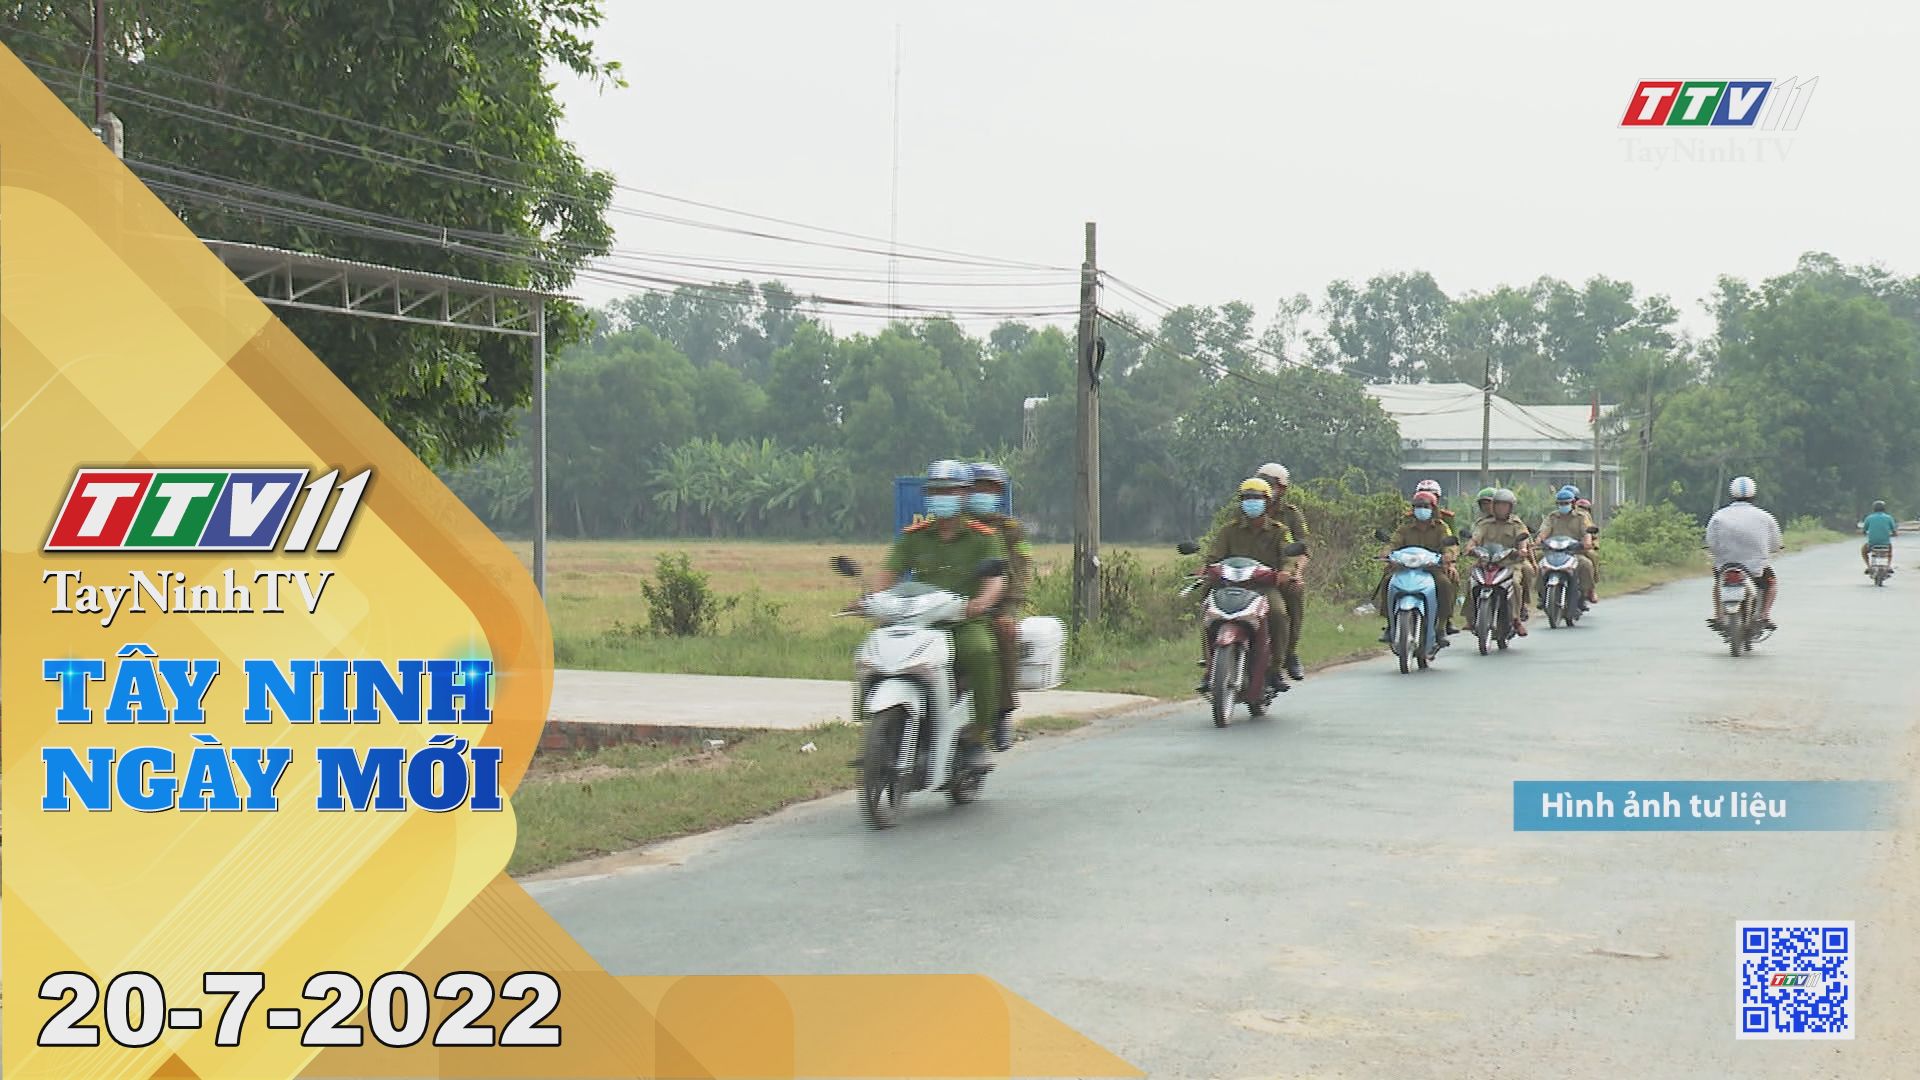 Tây Ninh ngày mới 20-7-2022 | Tin tức hôm nay | TayNinhTV